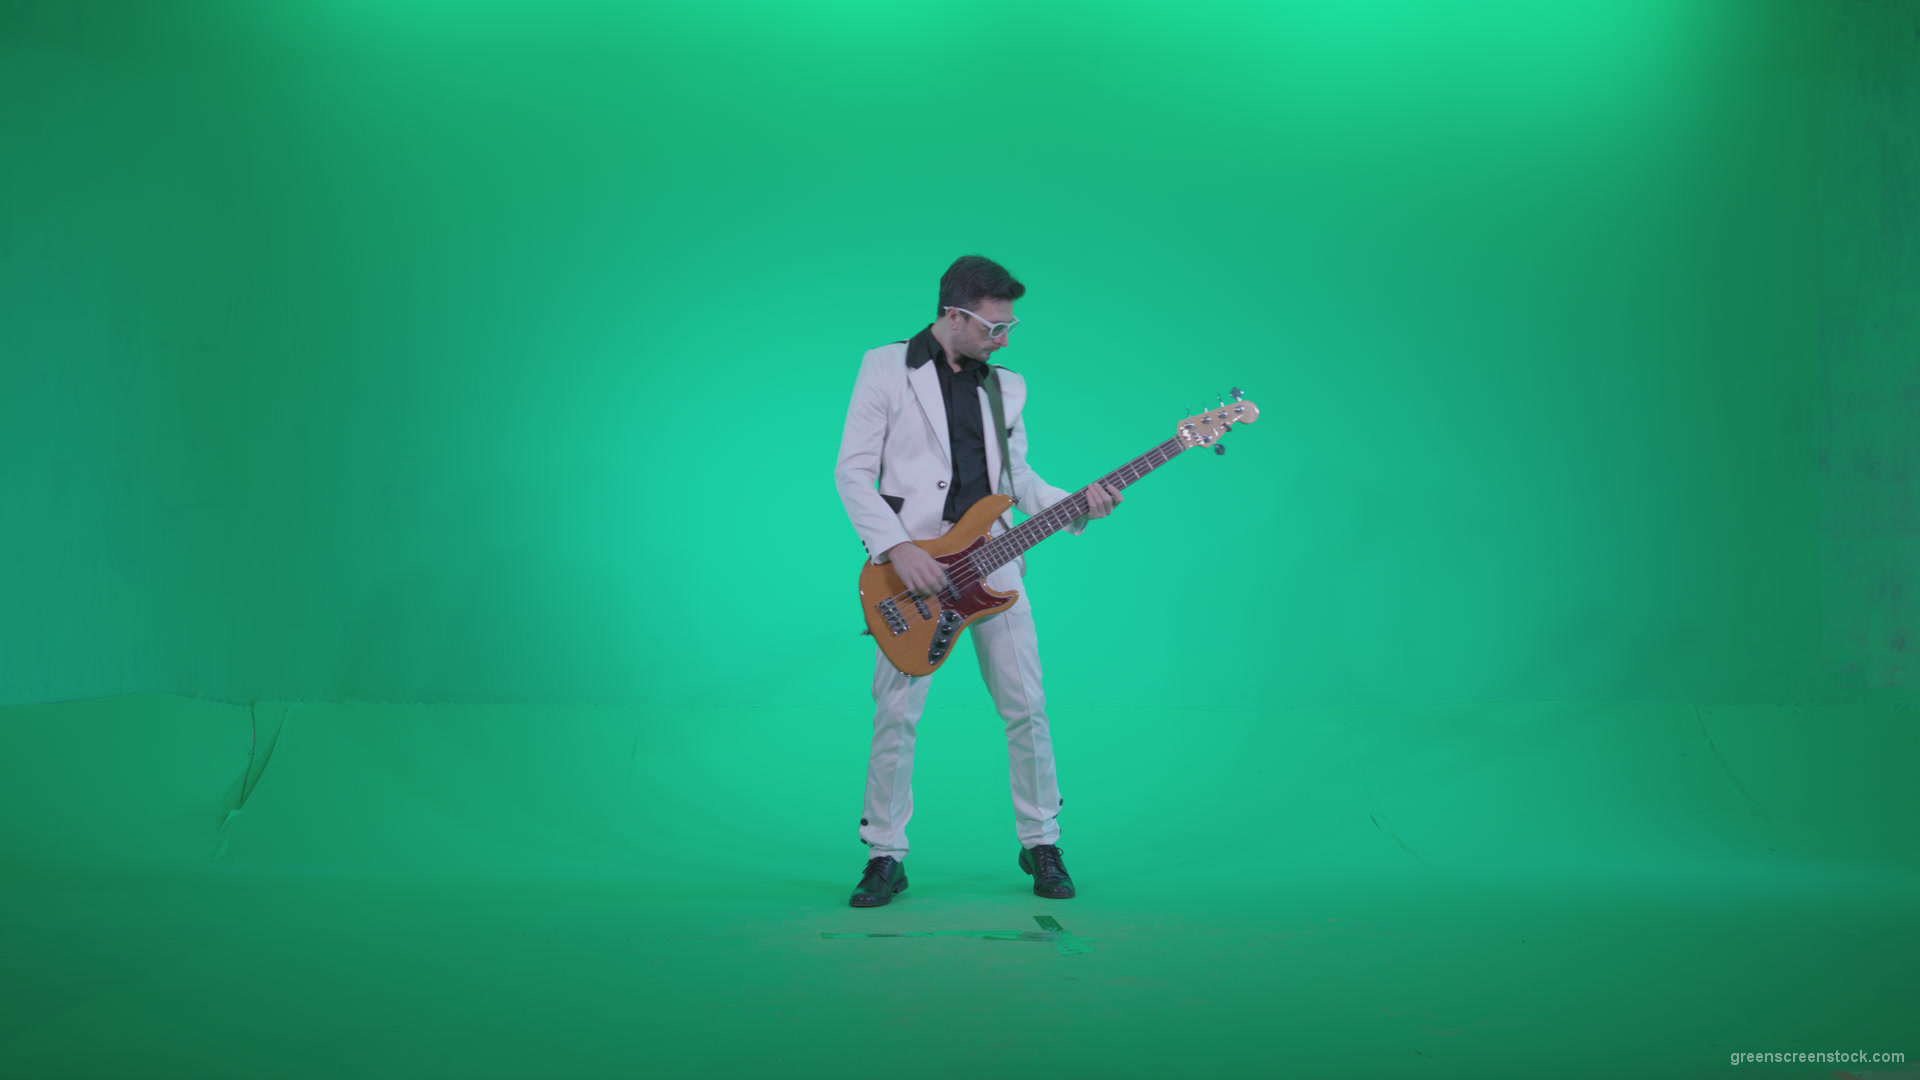 Bass-Jazz-Performer-6-Green-Screen-Video-Footage_001 Green Screen Stock